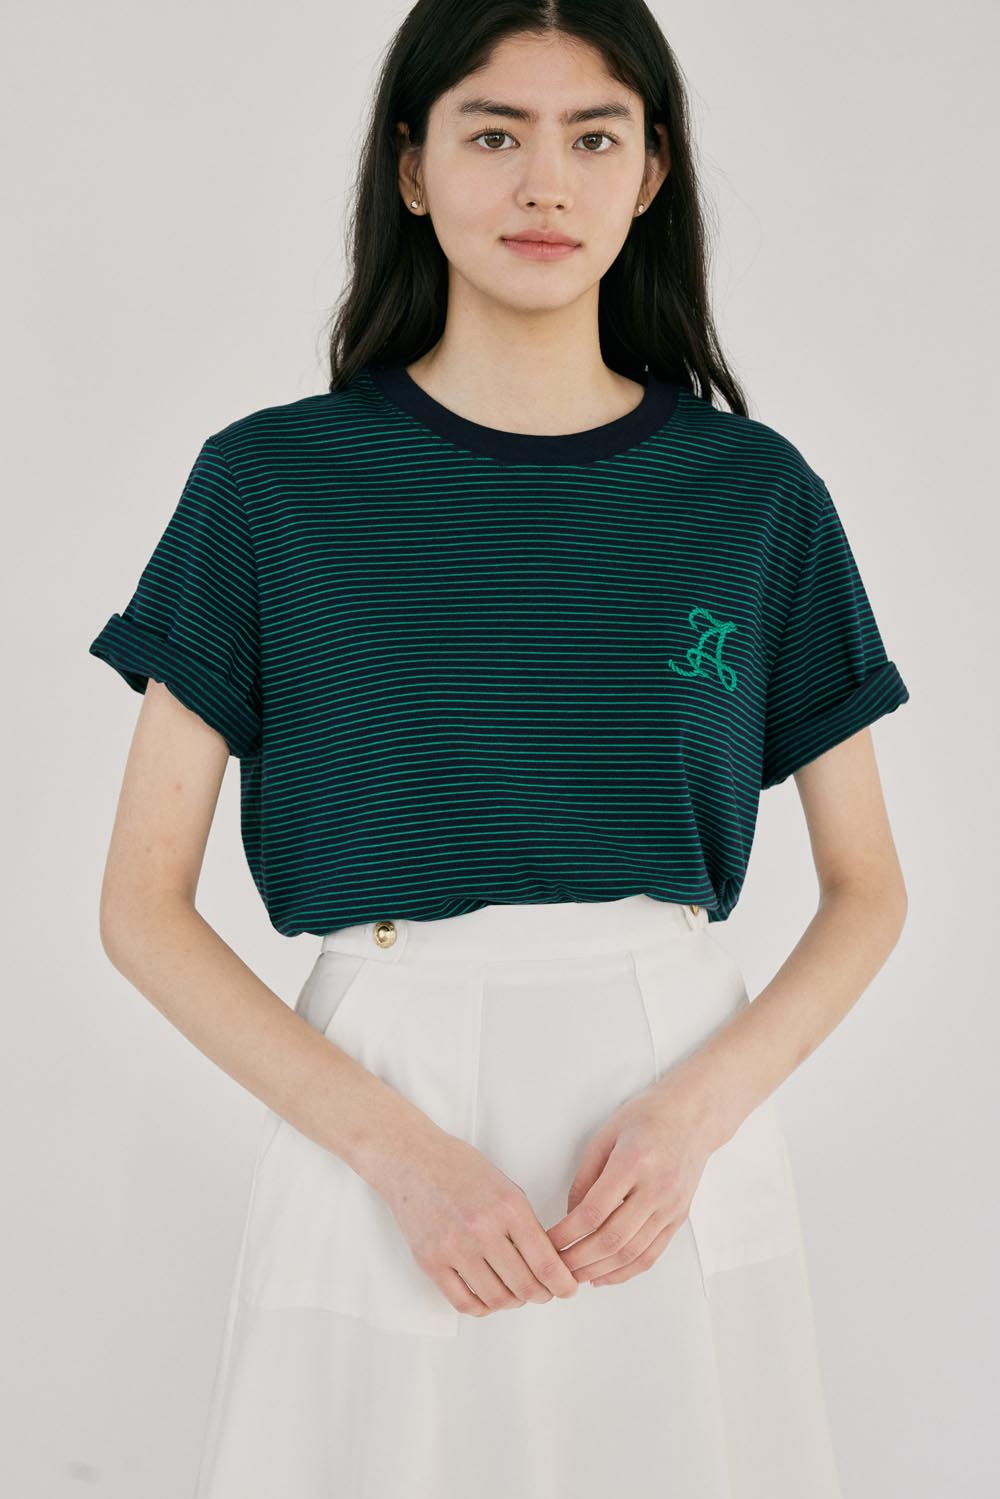 H A Stripe T-shirt_Navy Green